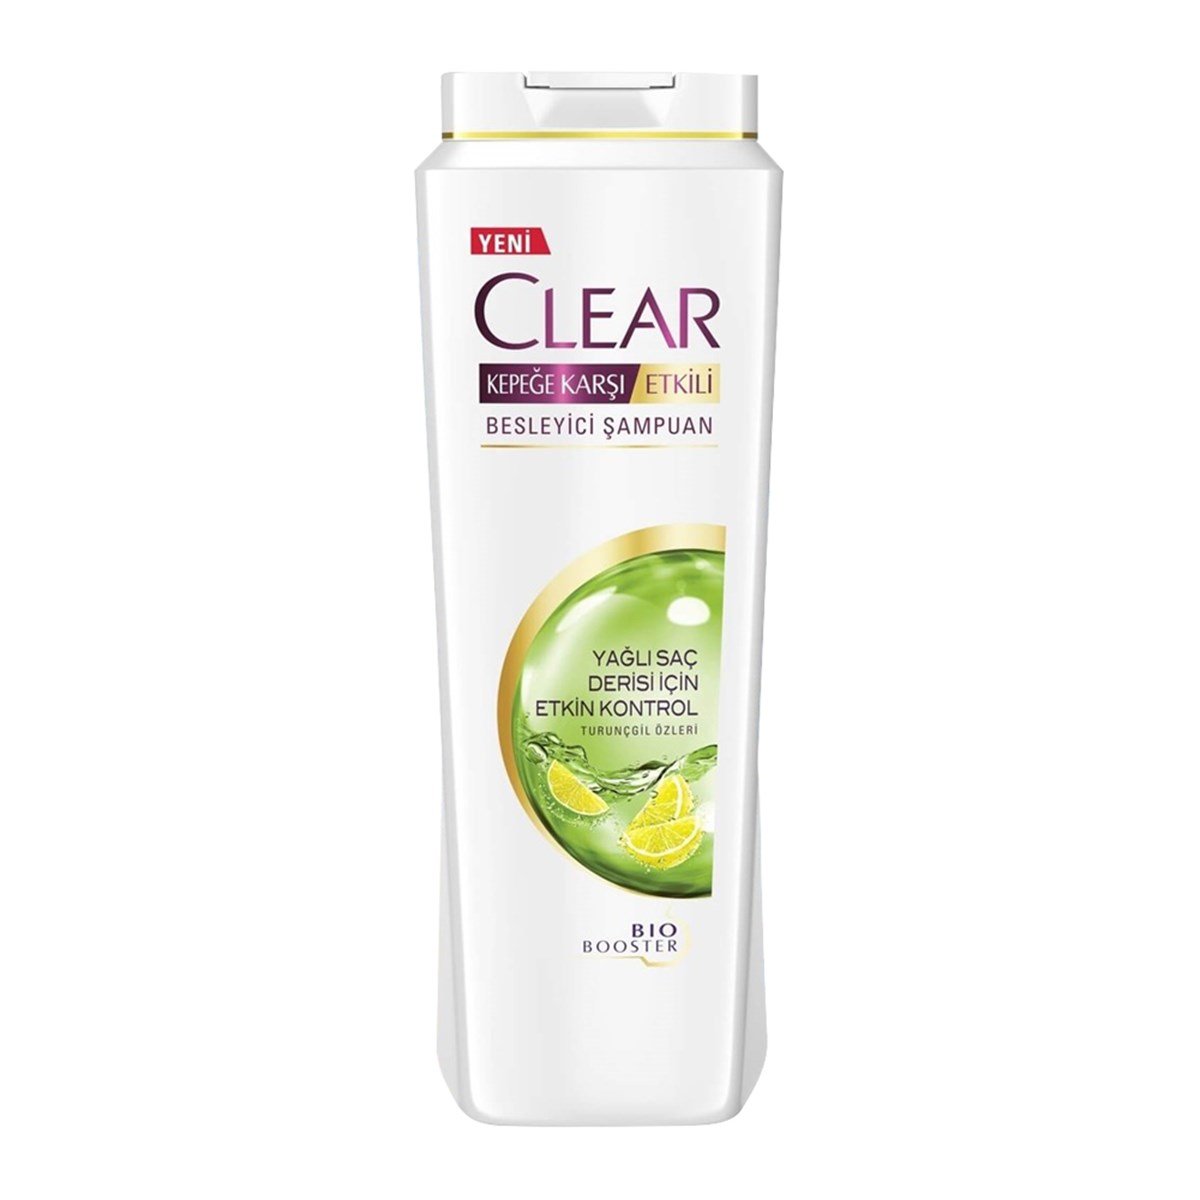 Clear Şampuan Yağlı Saç Derisi İçin Etkin Kontrol 550 Ml - Platin